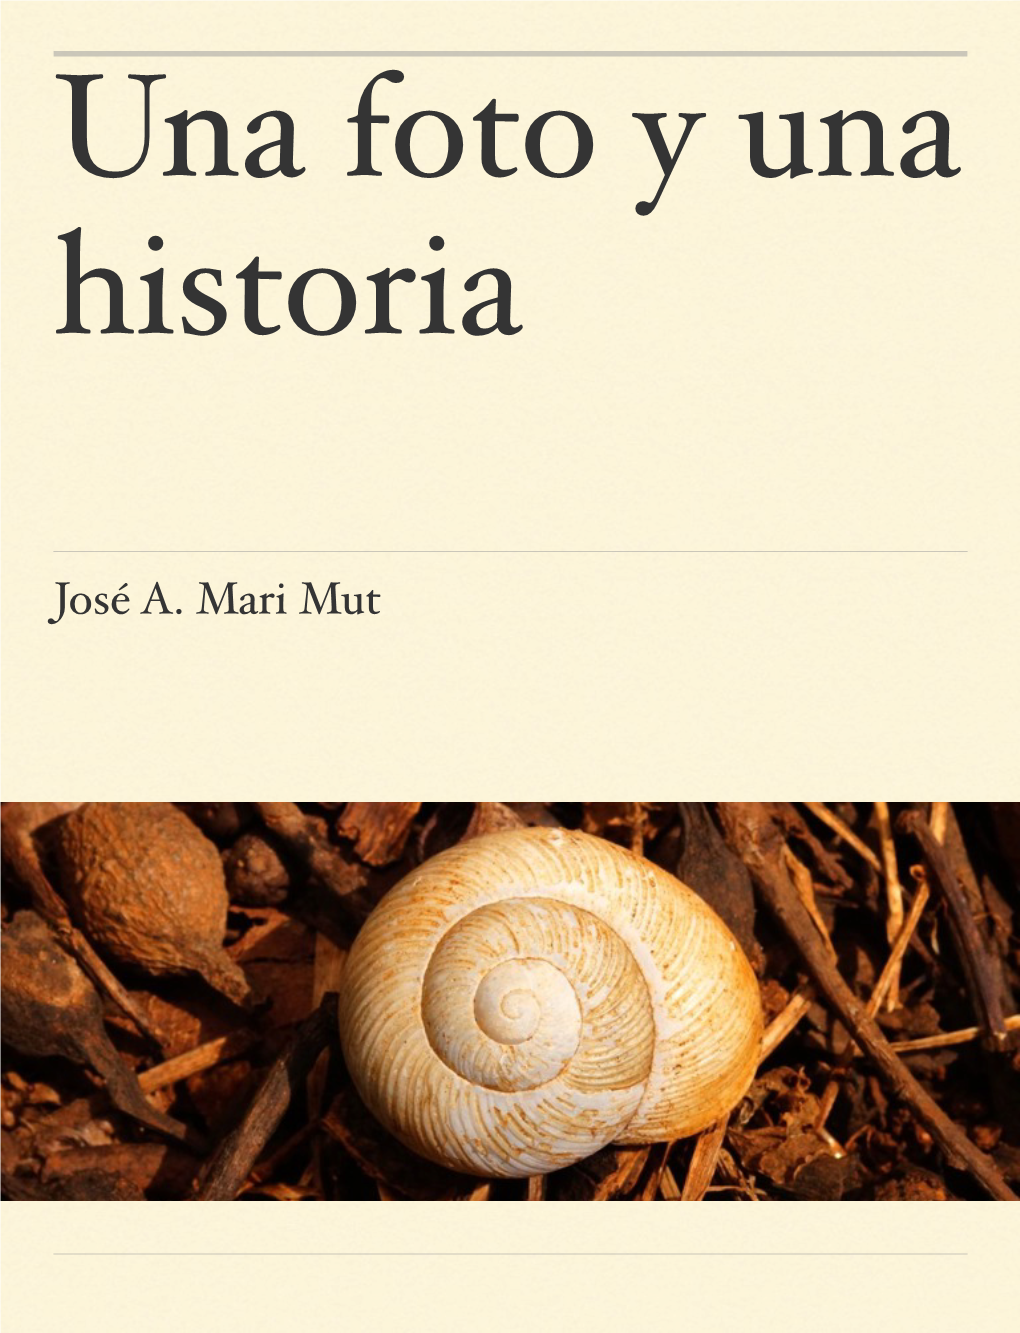 José A. Mari Mut �Una Foto Y Una Historia Es Una Colección De Imágenes Captadas Por El Autor Y Acompañadas Por Una Corta Historia